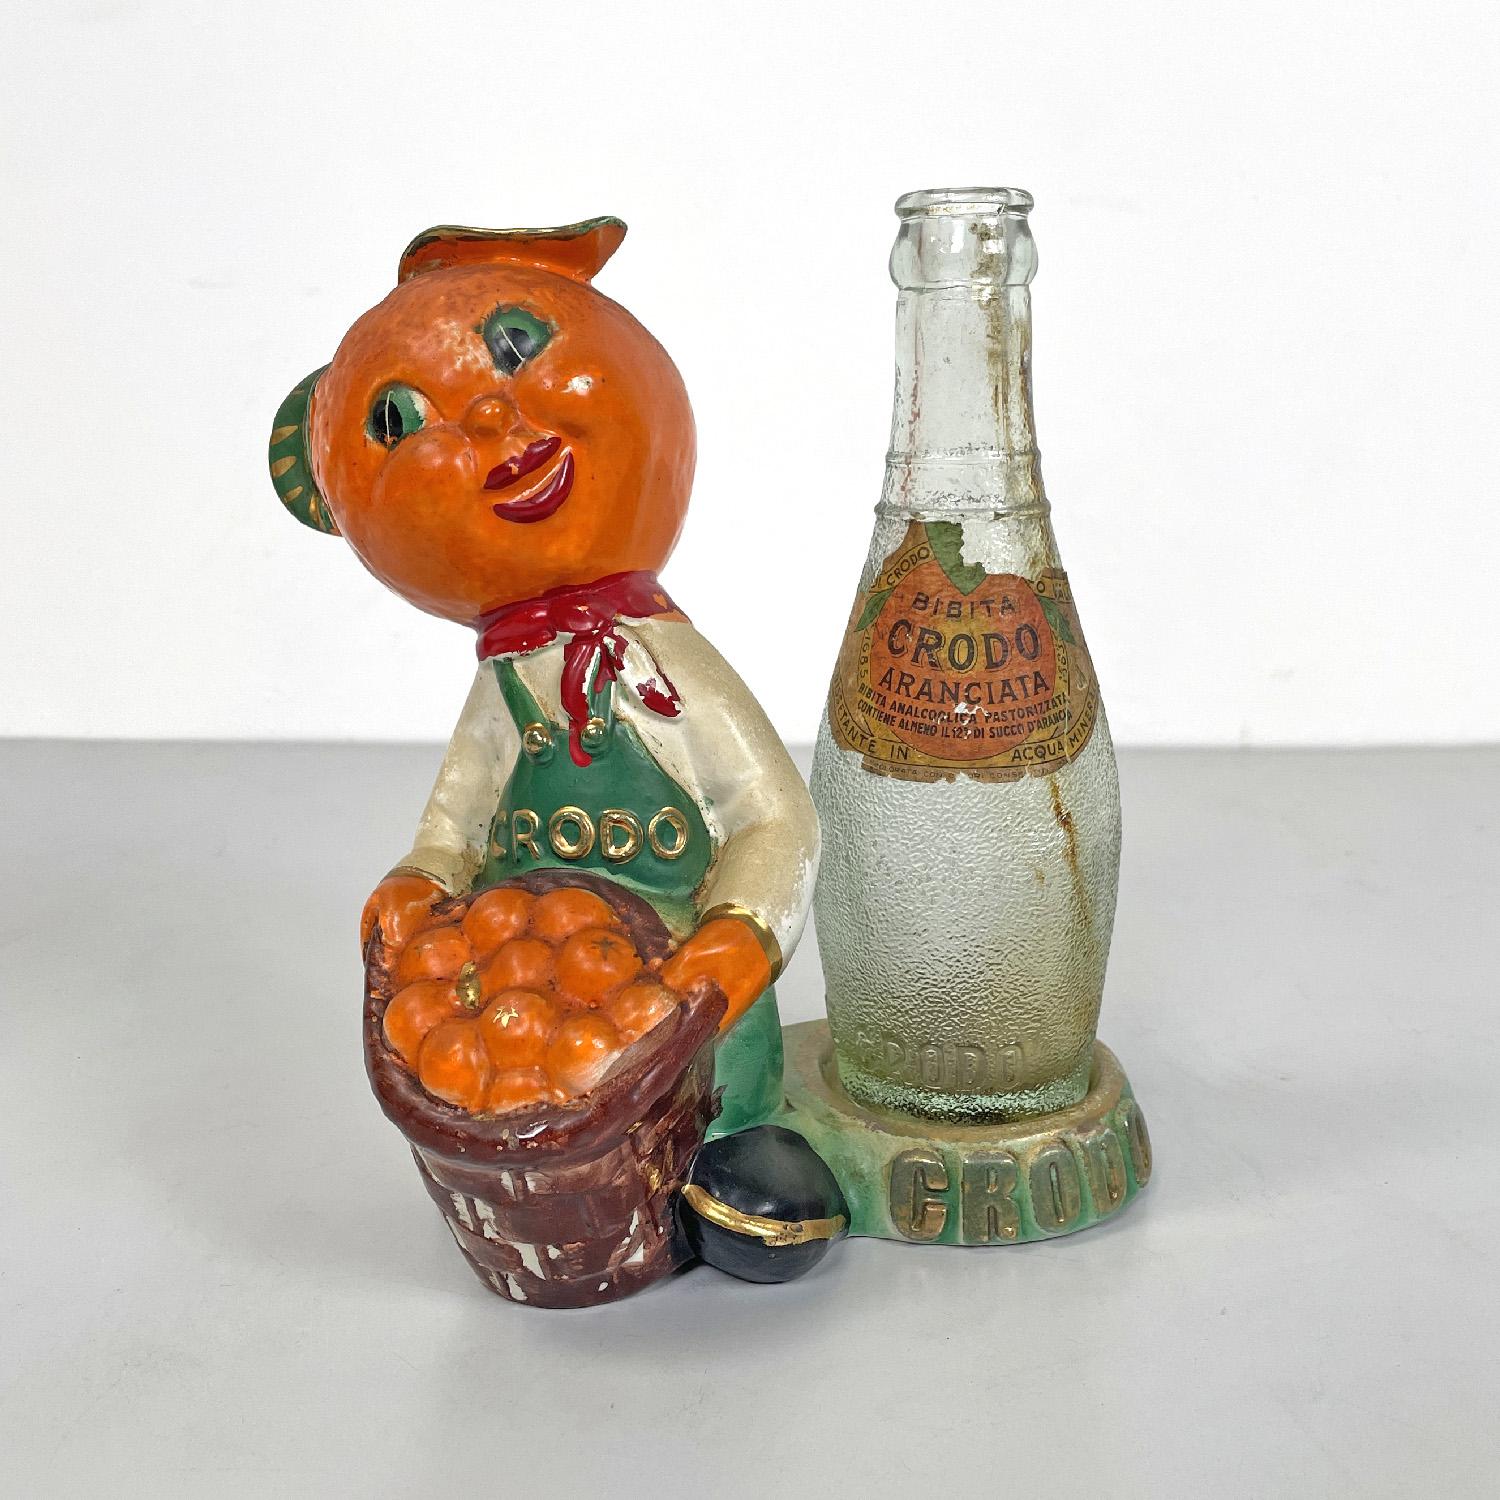 Italienische Werbeskulptur von Crodo aus der Mitte des Jahrhunderts mit Glasflasche, 1960er Jahre
Werbeskulptur aus glasierter Keramik. Die Figur ist das Maskottchen der Marke, hat eine Mandarine als Kopf und trägt einen Korb voller Mandarinen, die